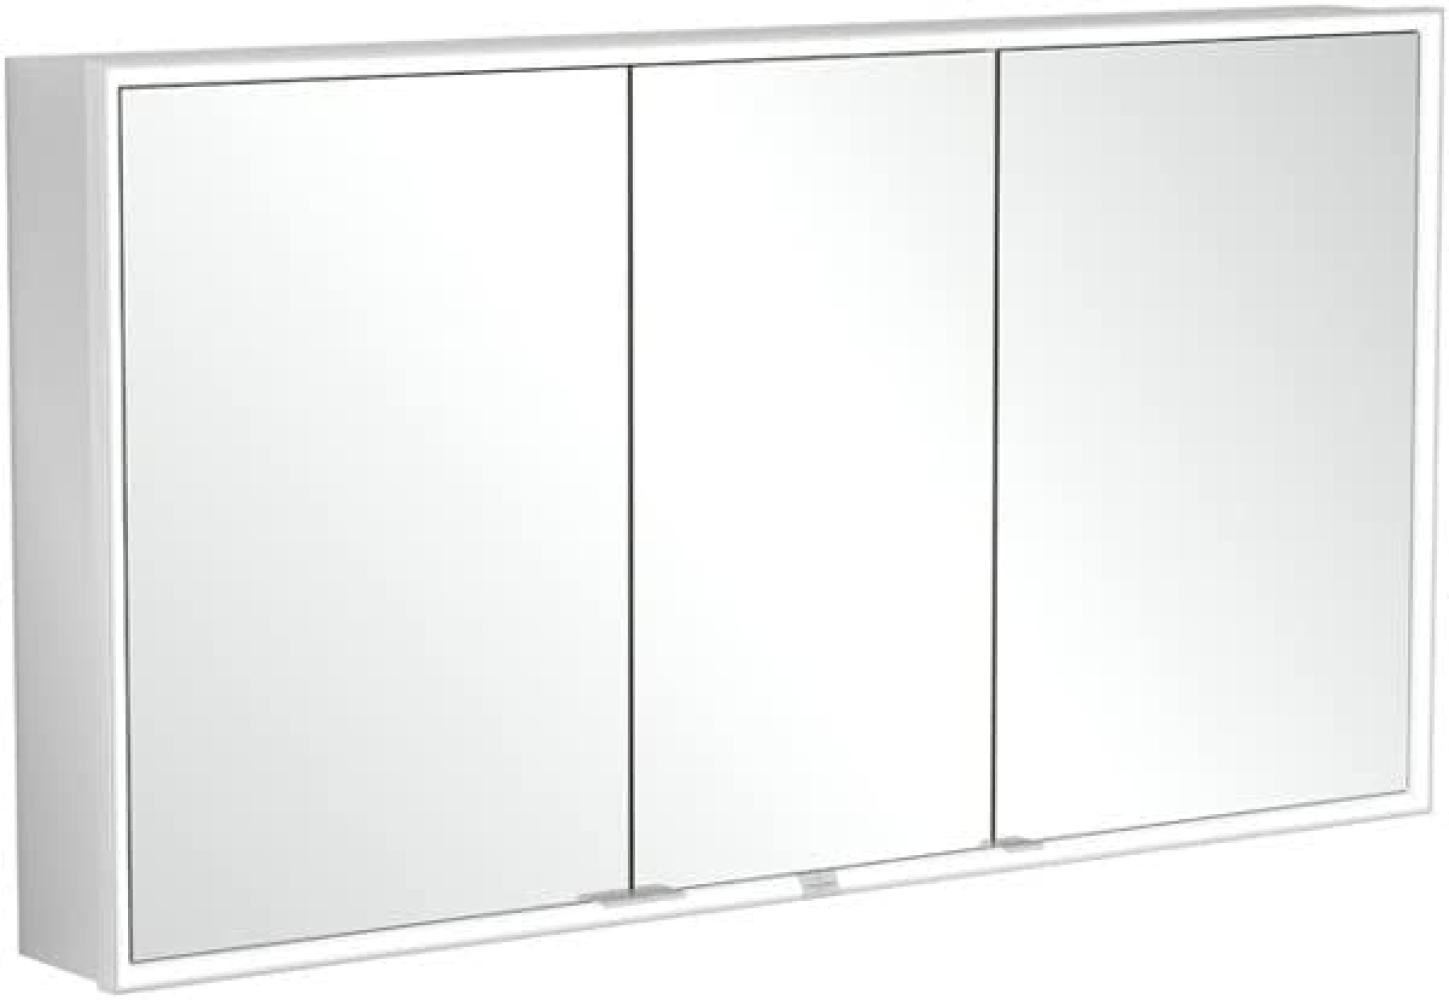 Villeroy & Boch My View Now, Spiegelschrank für Wandeinbau mit Beleuchtung, 1400x750x167,5 mm, mit Ein-/Ausschalter, Smart Home fähig, 3 Türen, A45814 - A4581400 Bild 1